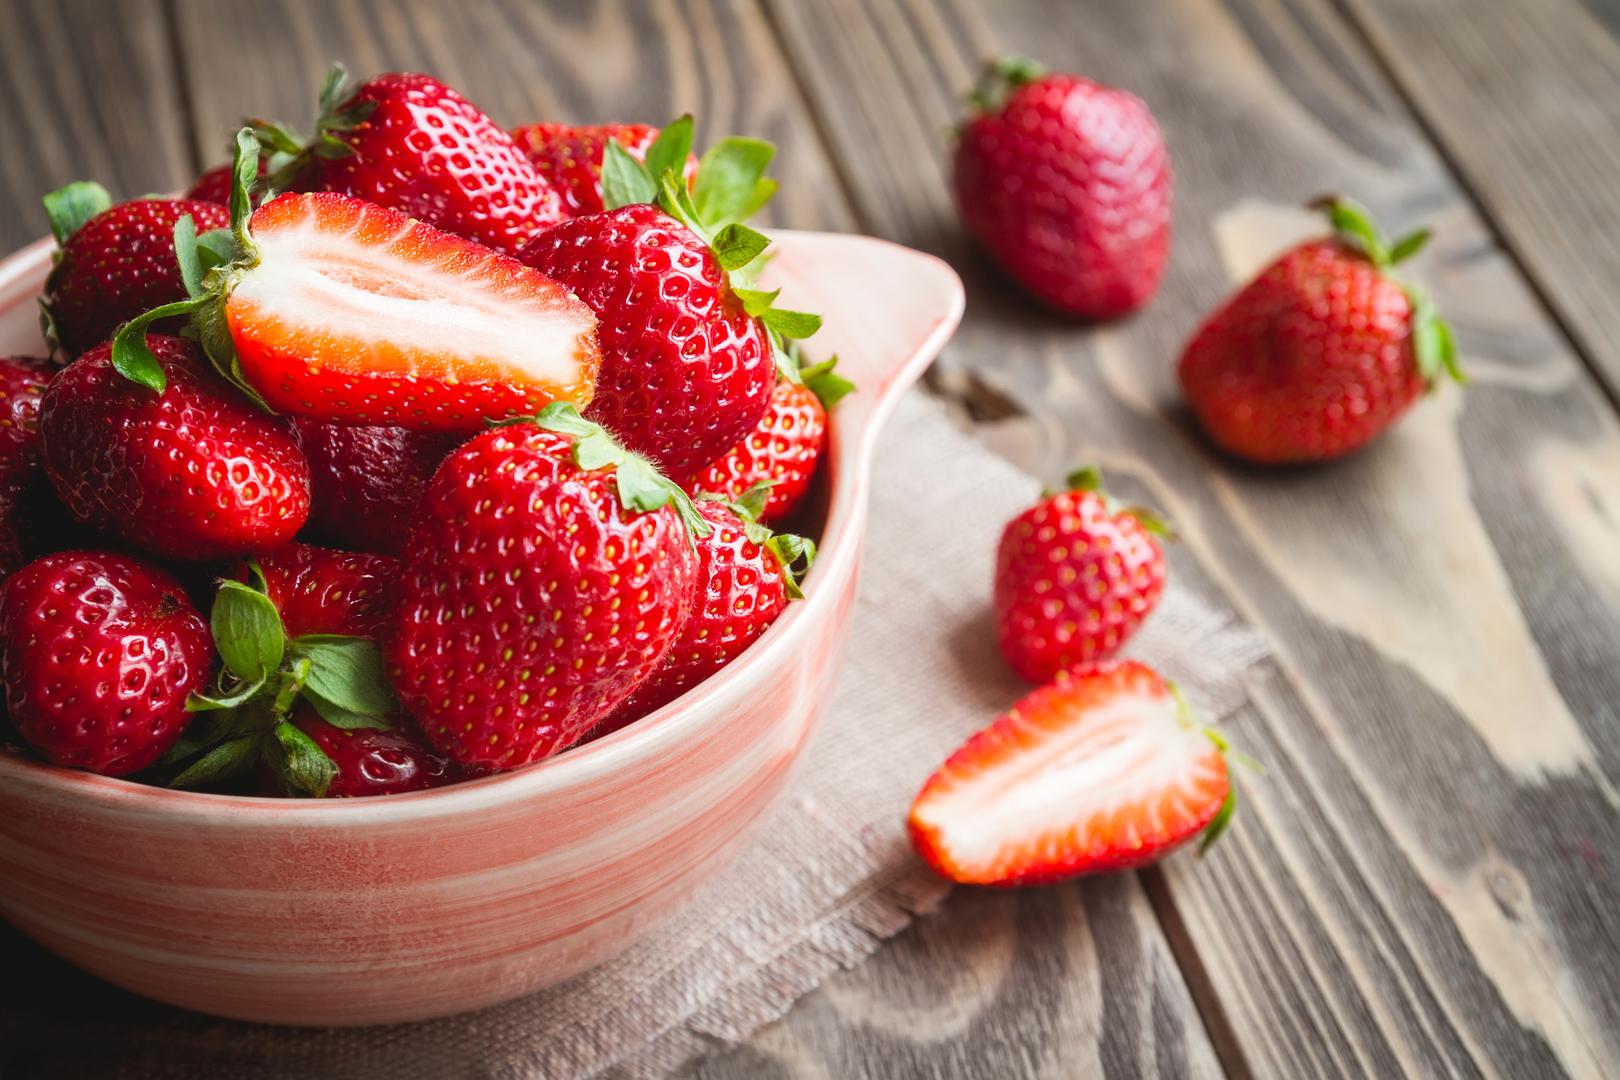 6. Prirodno slatke, bez dodanih šećera, jagode su voće koje mnogi vole i koje može oplemeniti mnoga jela, a pomaže i održavanju zdrave razine kolesterola. Prema maloj studiji objavljenoj u Journal of Nutritional Biochemistry, ljudi koji su jeli određenu količinu jagoda svaki dan tijekom jednog mjeseca imali su smanjenu razinu ukupnog kolesterola, kao i LDL kolesterola.